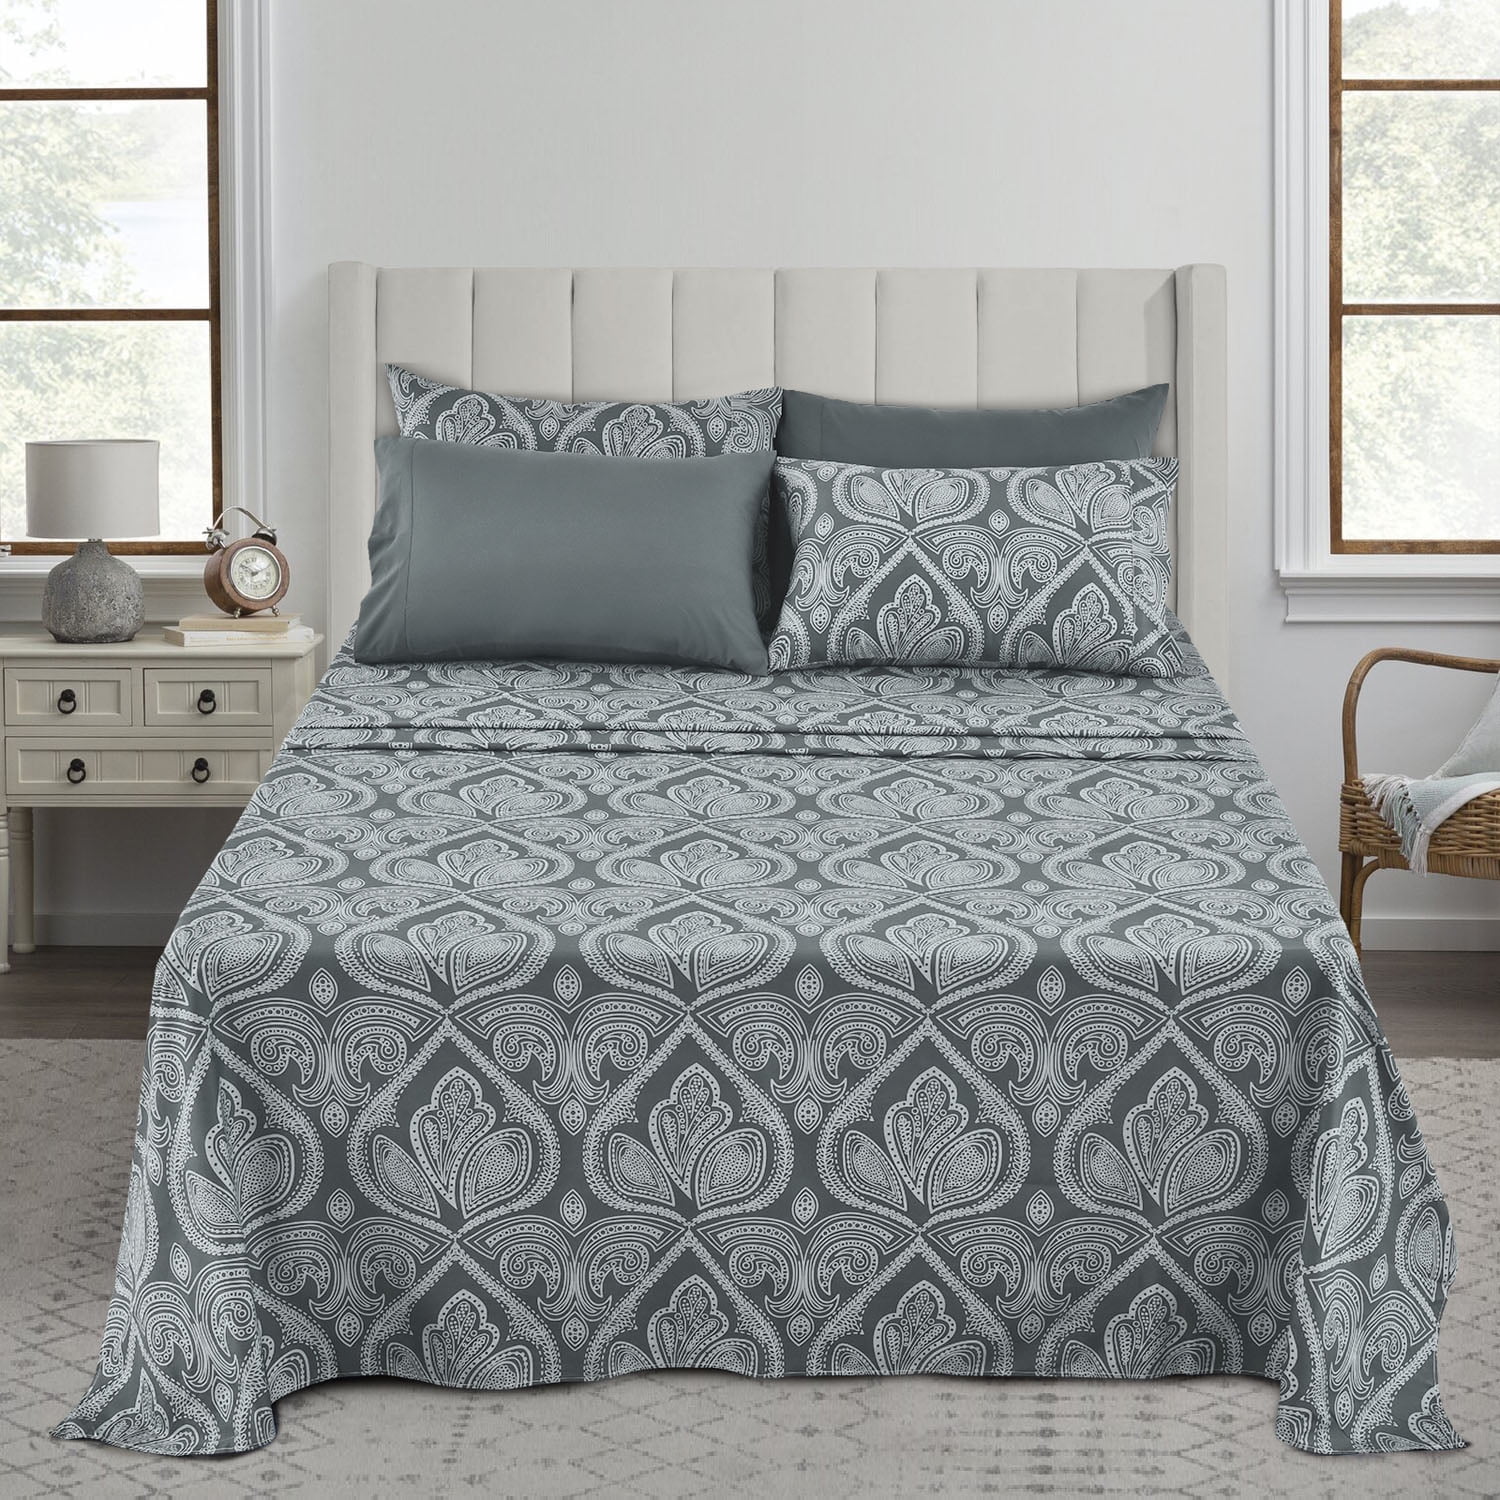 Details about   160 TC Floral Bedsheet Double Bedding White Home Décor Pillowcase Bedspread 